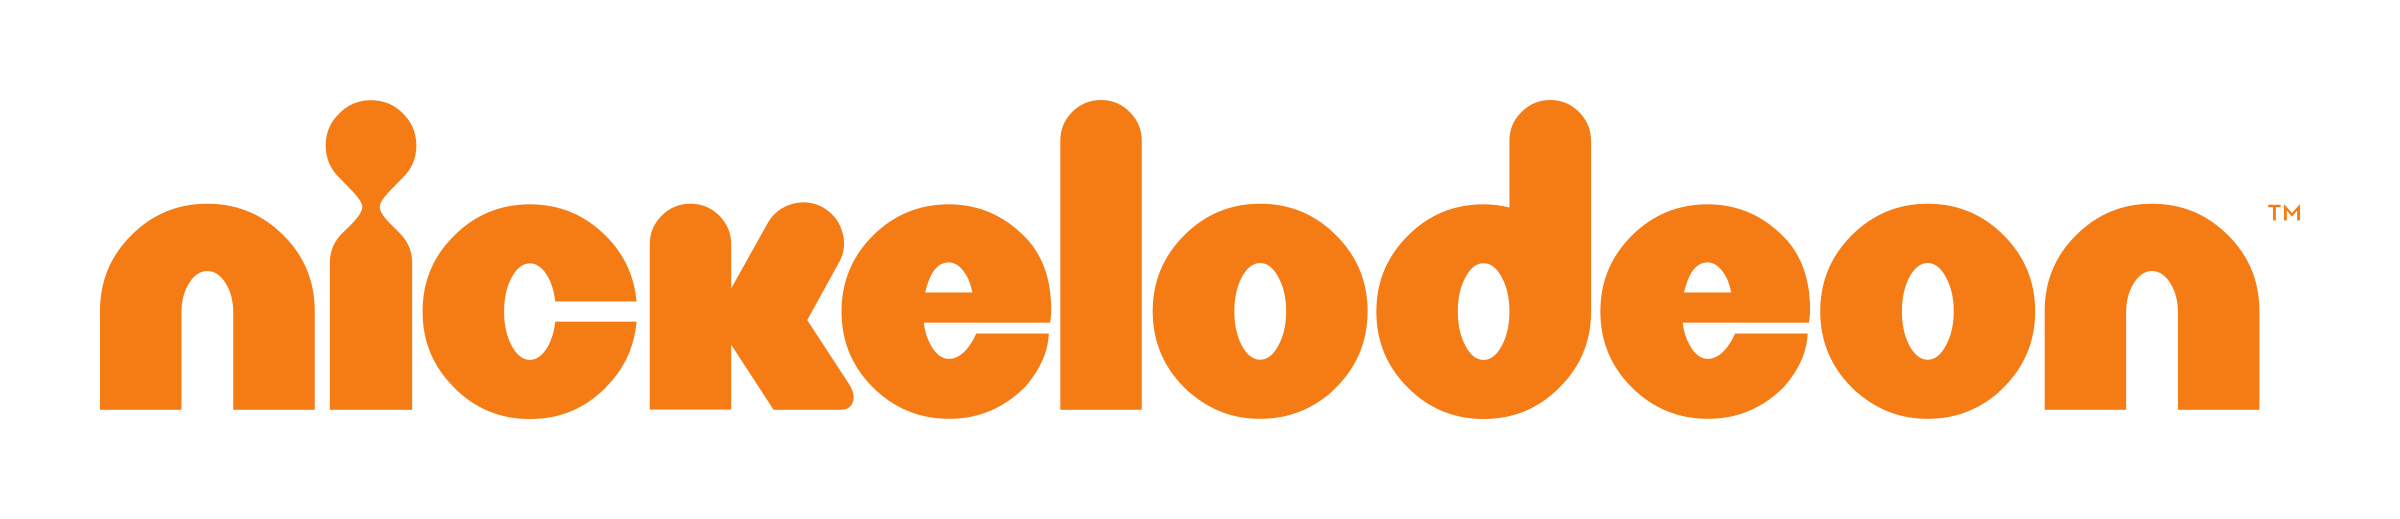 Nikelodeon Logo - Nickelodeon Logo PNG Transparent & SVG Vector - Freebie Supply